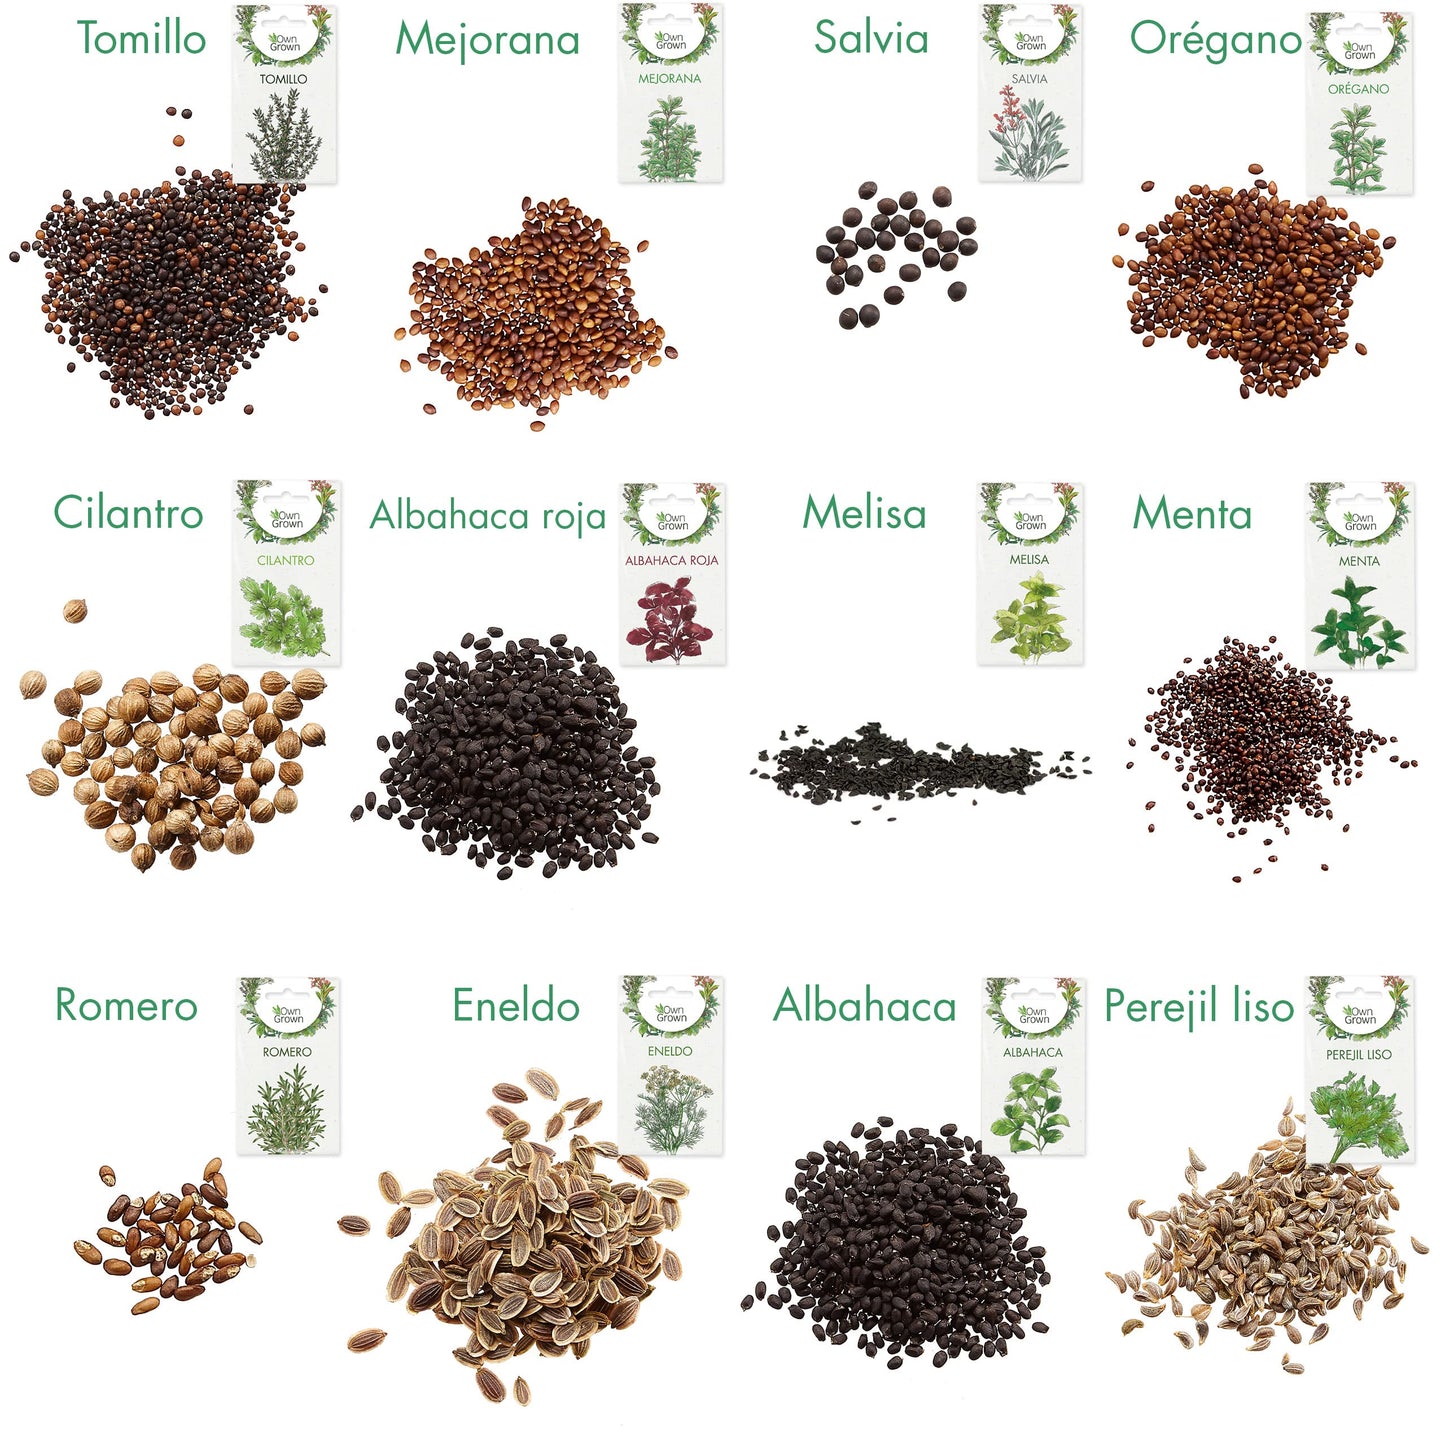 Kit Semillas Hierbas: 12 Variedades de Hierbas Aromaticas para plantar – Semillas Huerto – Albahaca, Tomillo, Cilantro – Plantas Aromaticas – OwnGrown